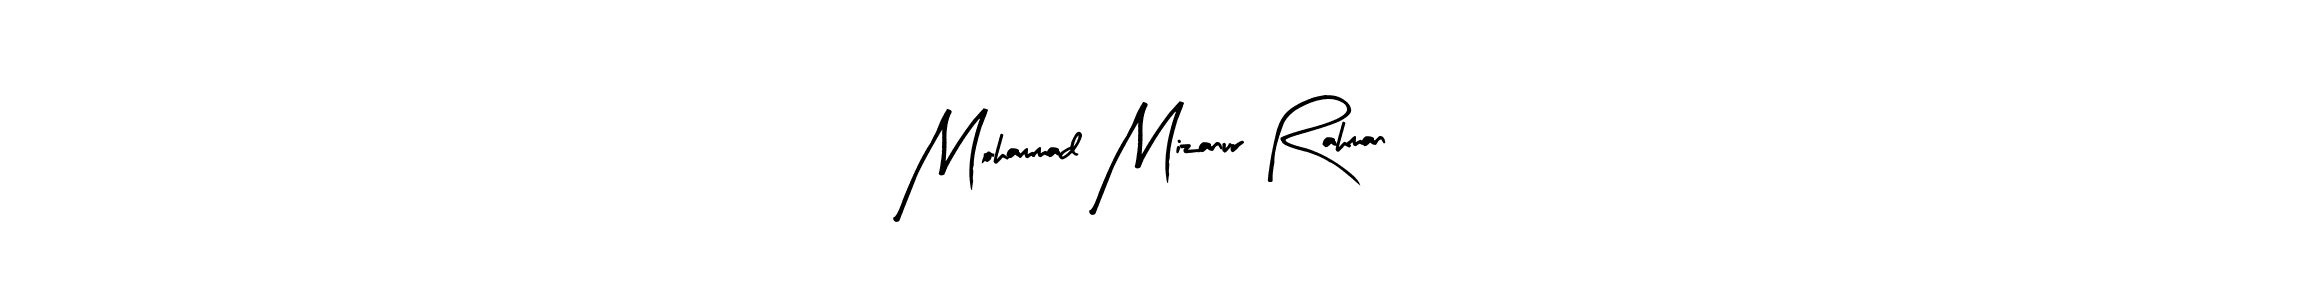 Mohammad Mizanur Rahman stylish signature style. Best Handwritten Sign (Arty Signature) for my name. Handwritten Signature Collection Ideas for my name Mohammad Mizanur Rahman. Mohammad Mizanur Rahman signature style 8 images and pictures png